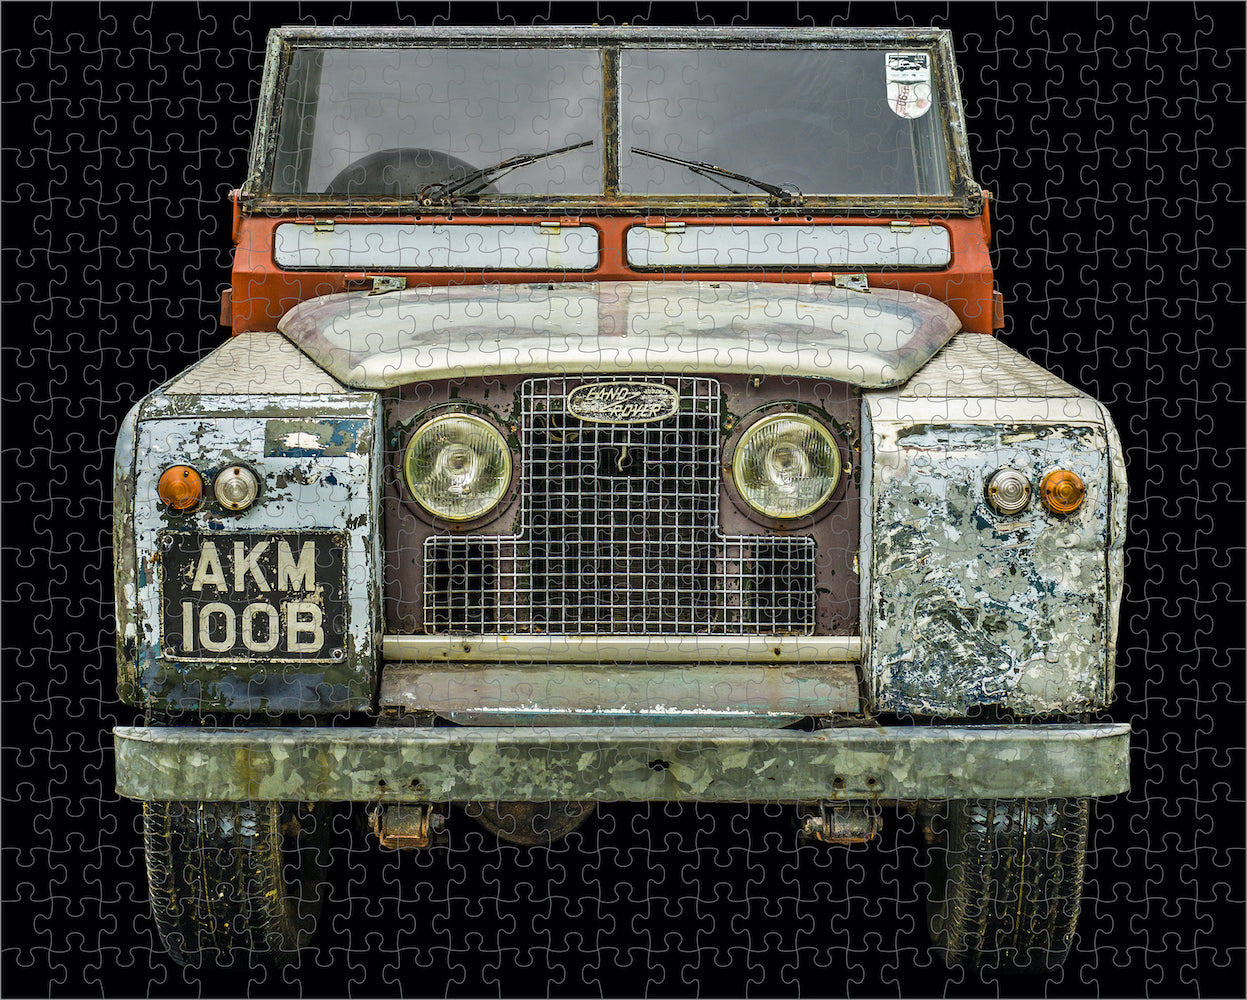 1964 Land Rover - 500 Pieces